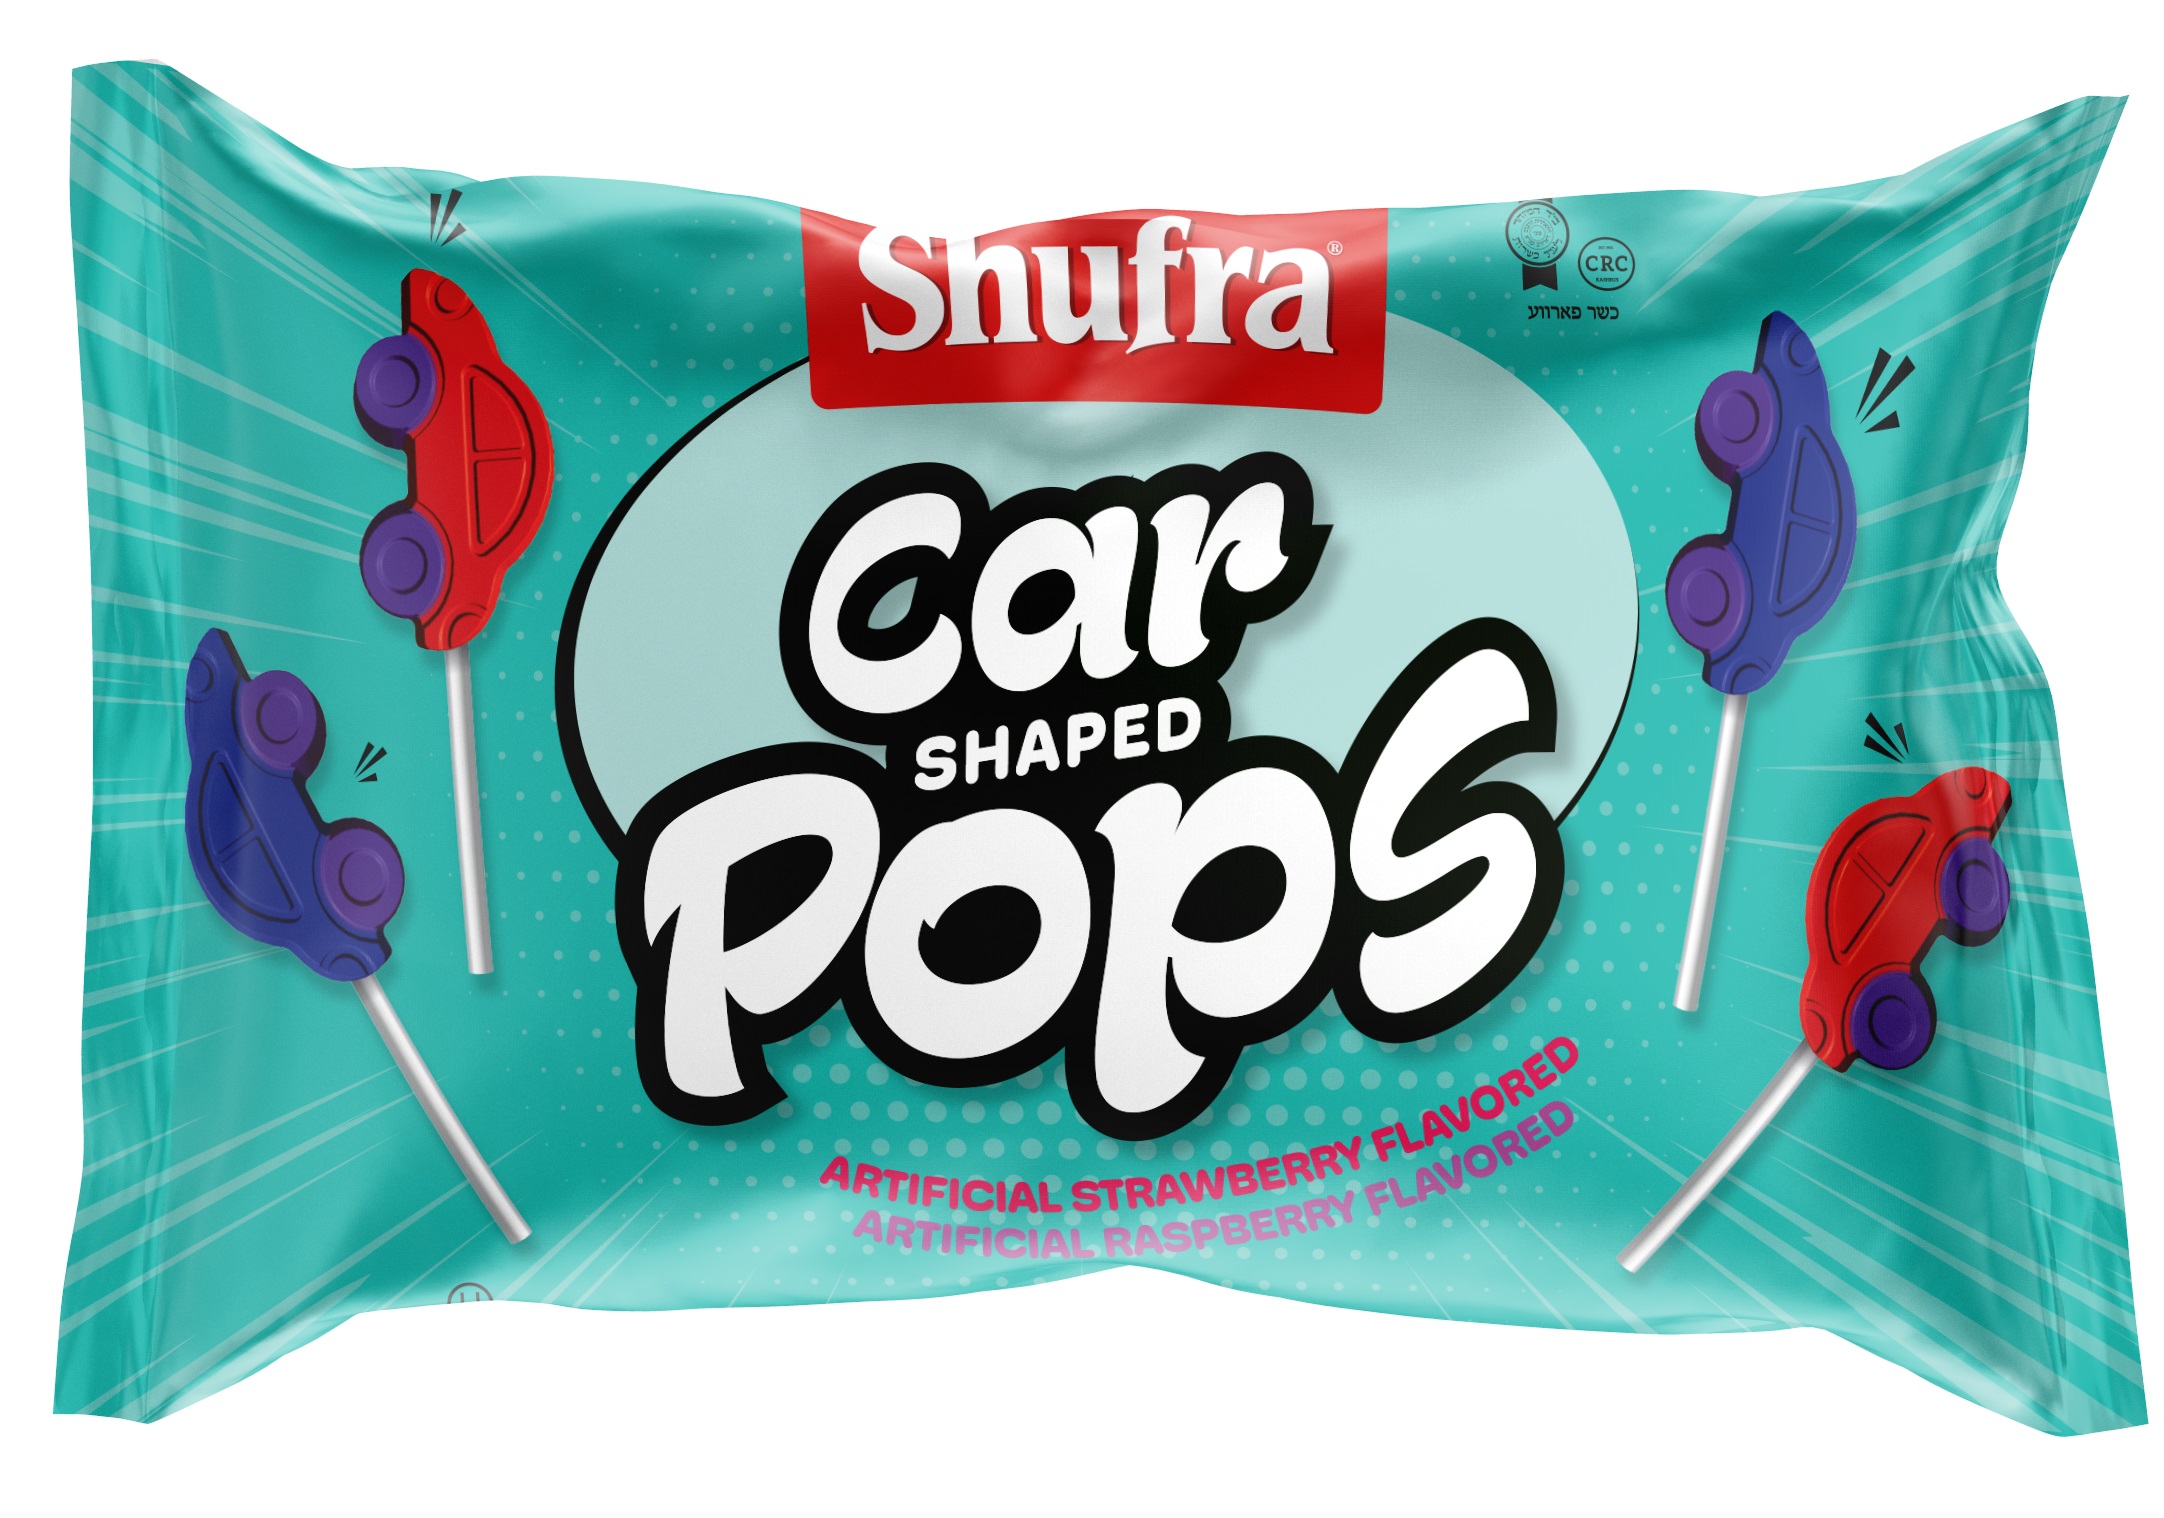 SHUFRA CAR SHAPED POPS